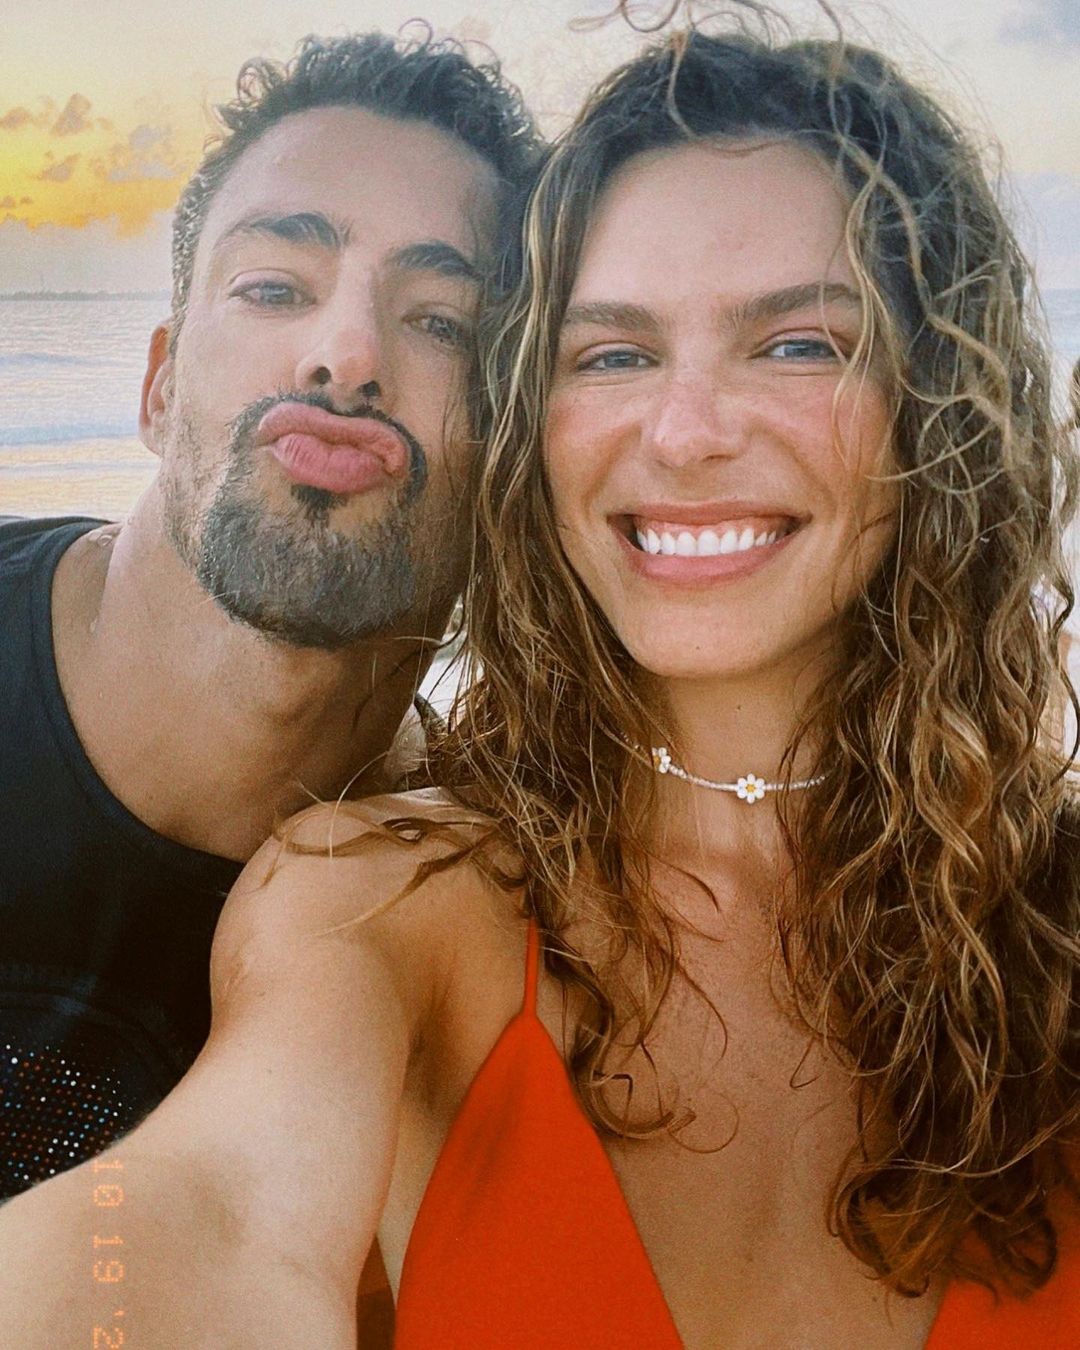 Cauã Reymond e Mariana Goldfarb (Foto: Reprodução / Instagram)